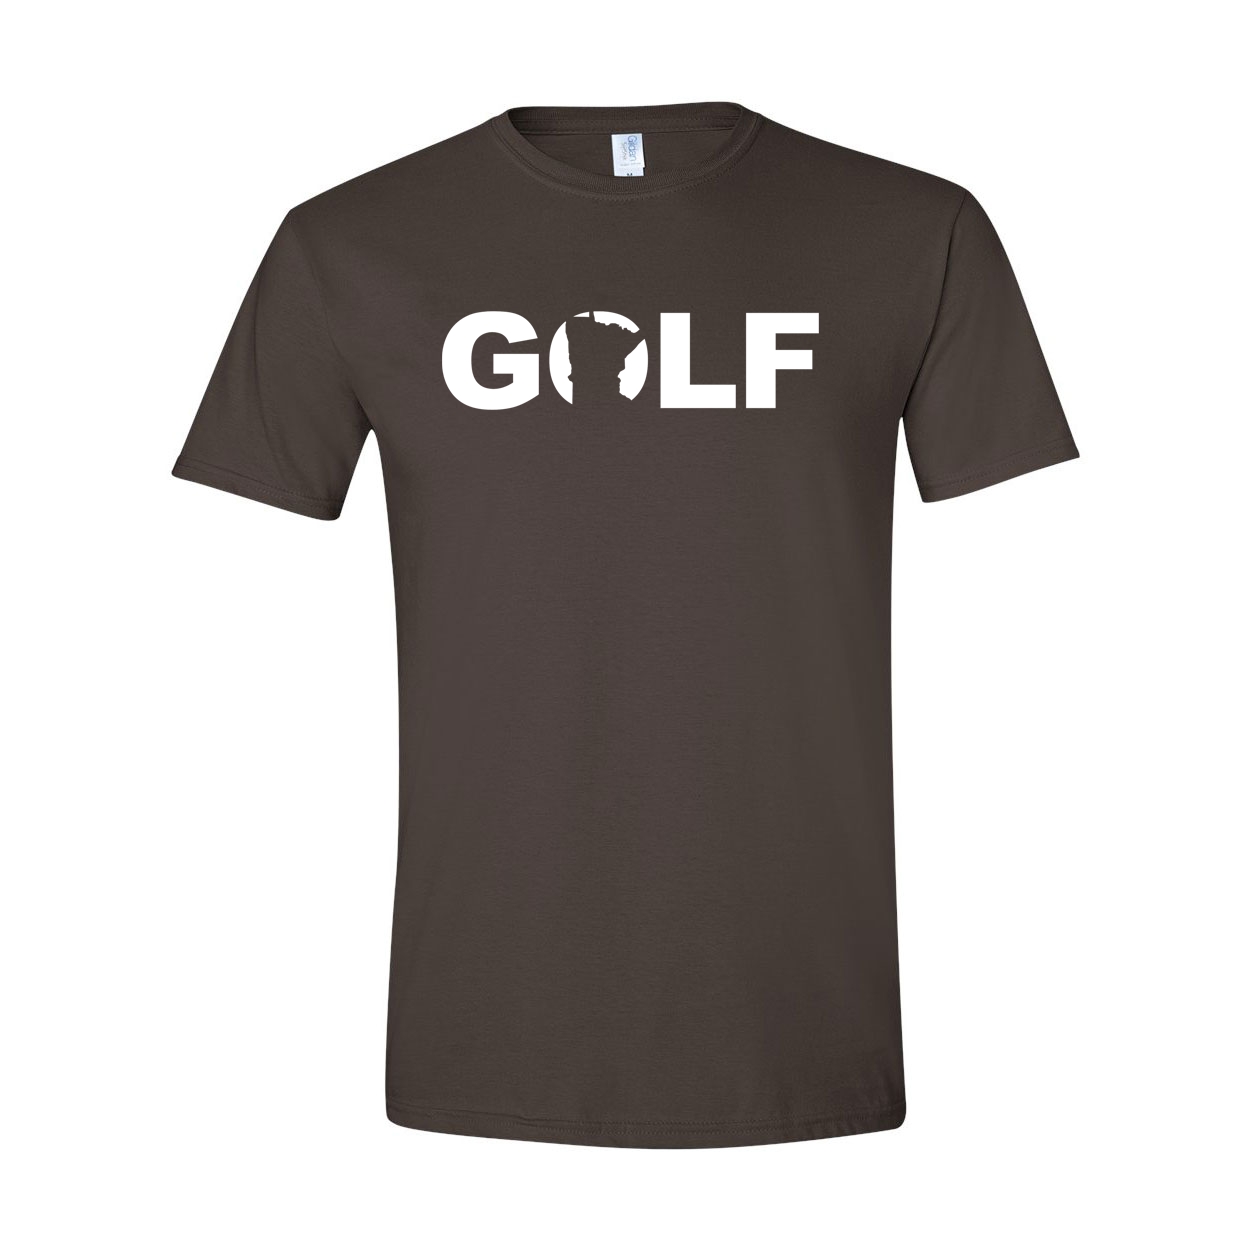 Golf Minnesota Classic T-Shirt Dark Chocolate Brown (White Logo)